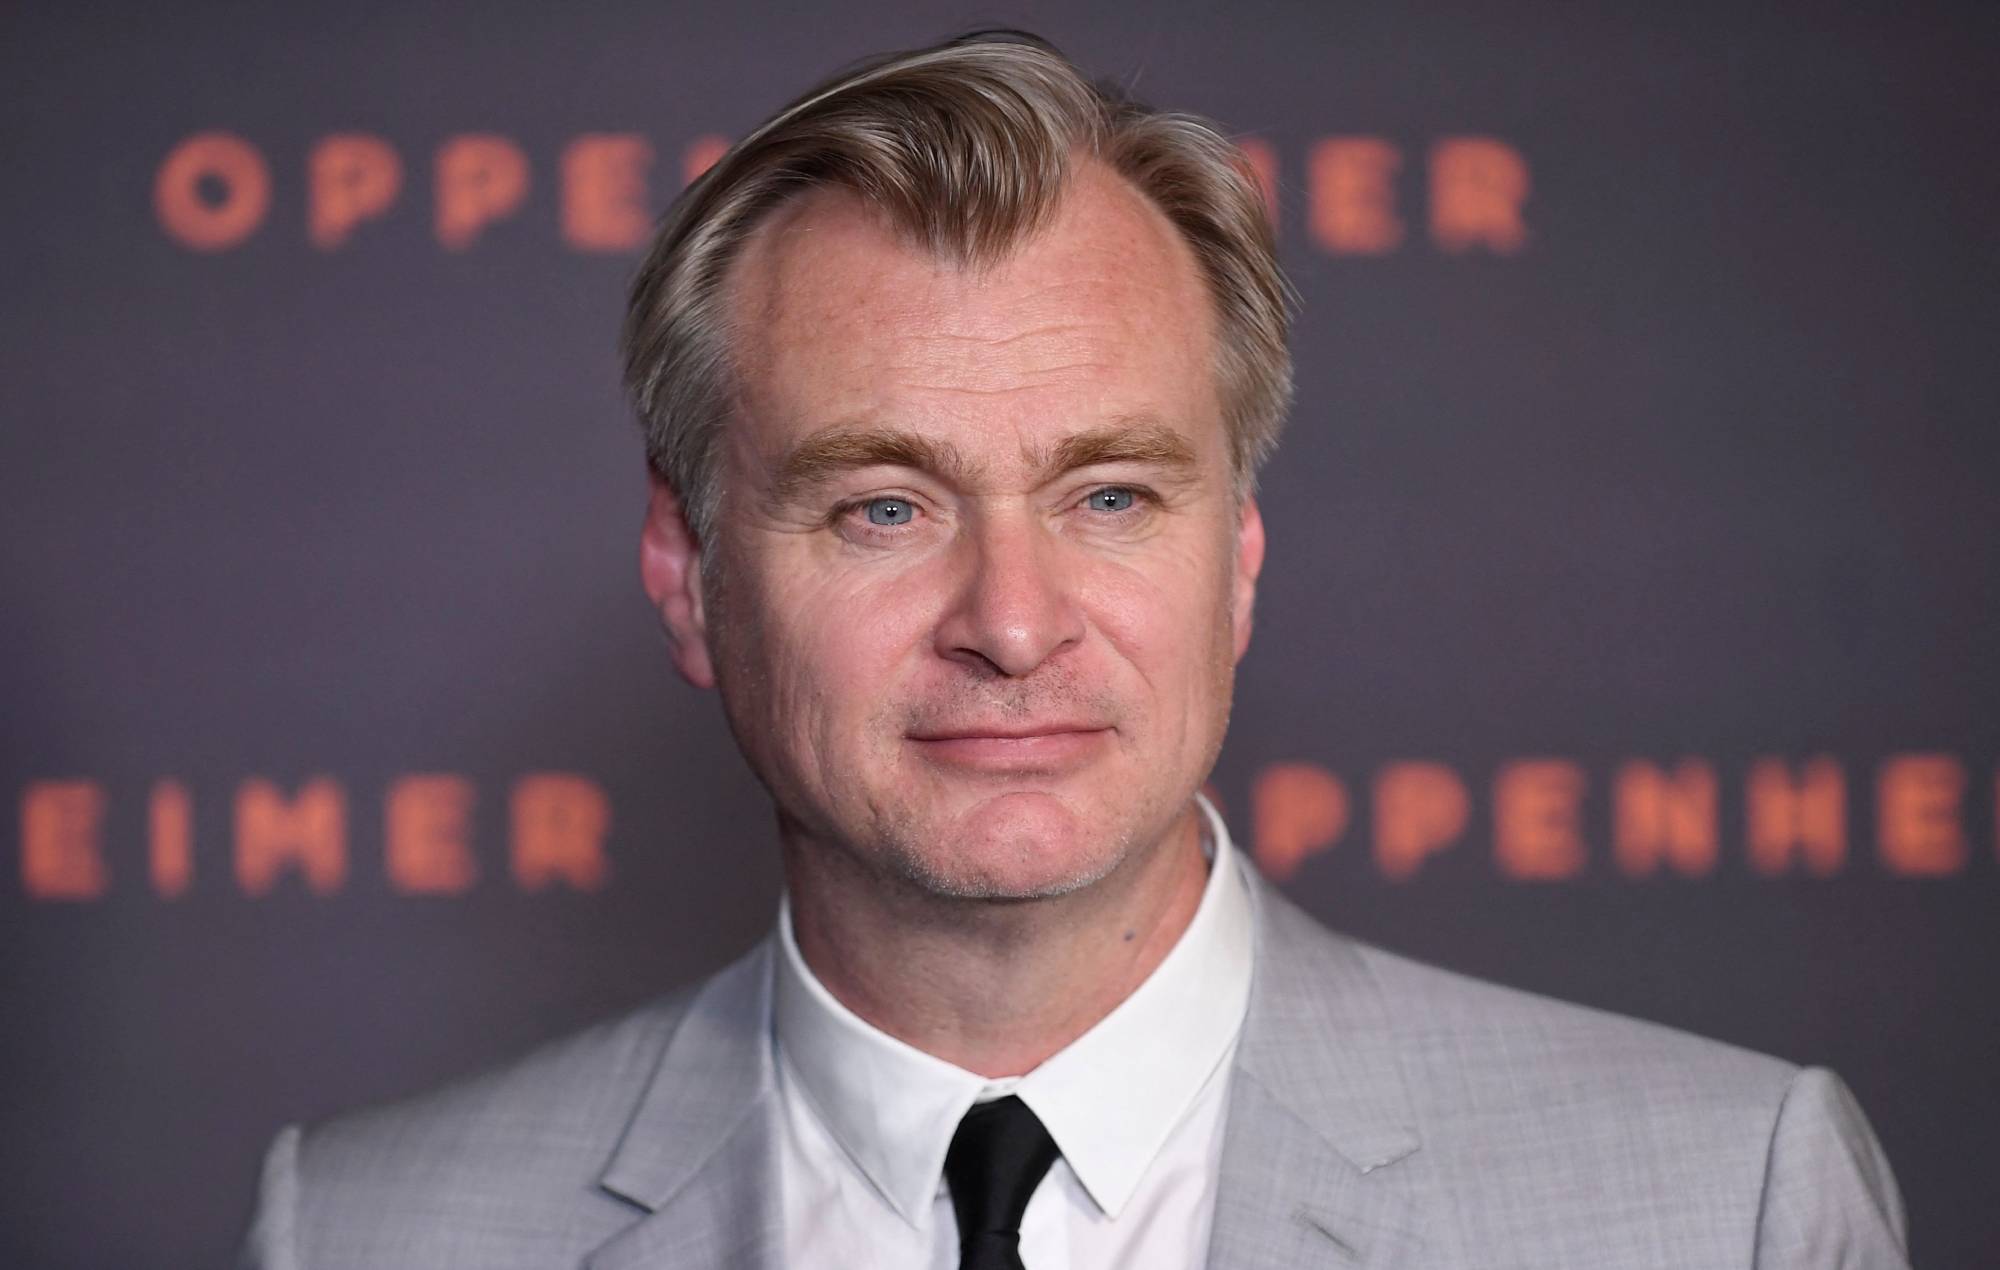 Christopher Nolan quiere hacer una película de terror, pero necesita "una idea excepcional"